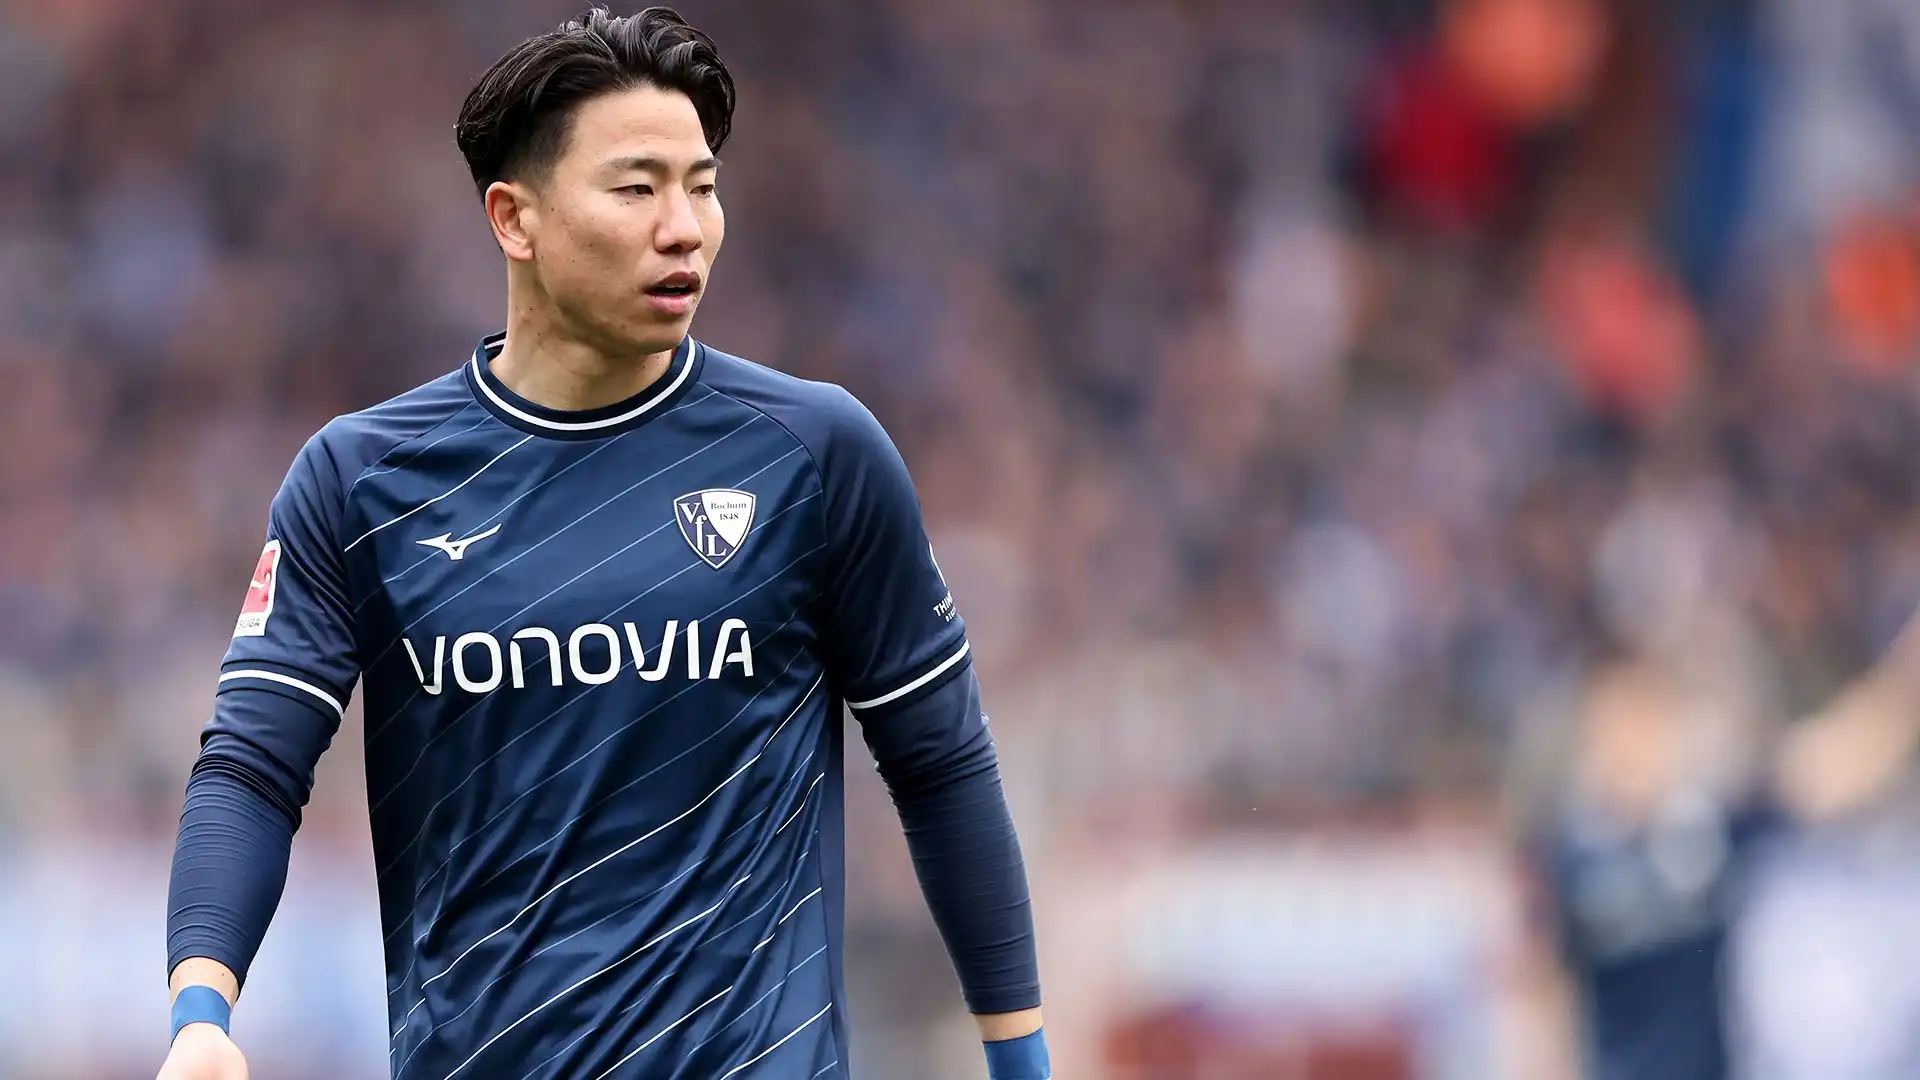 Takuma Asano (Attaccante): patrimonio netto stimato di 5 milioni di dollari. In Europa ha giocato nello Stoccarda, nell'Hannover, nel Partizan e nel Bochum